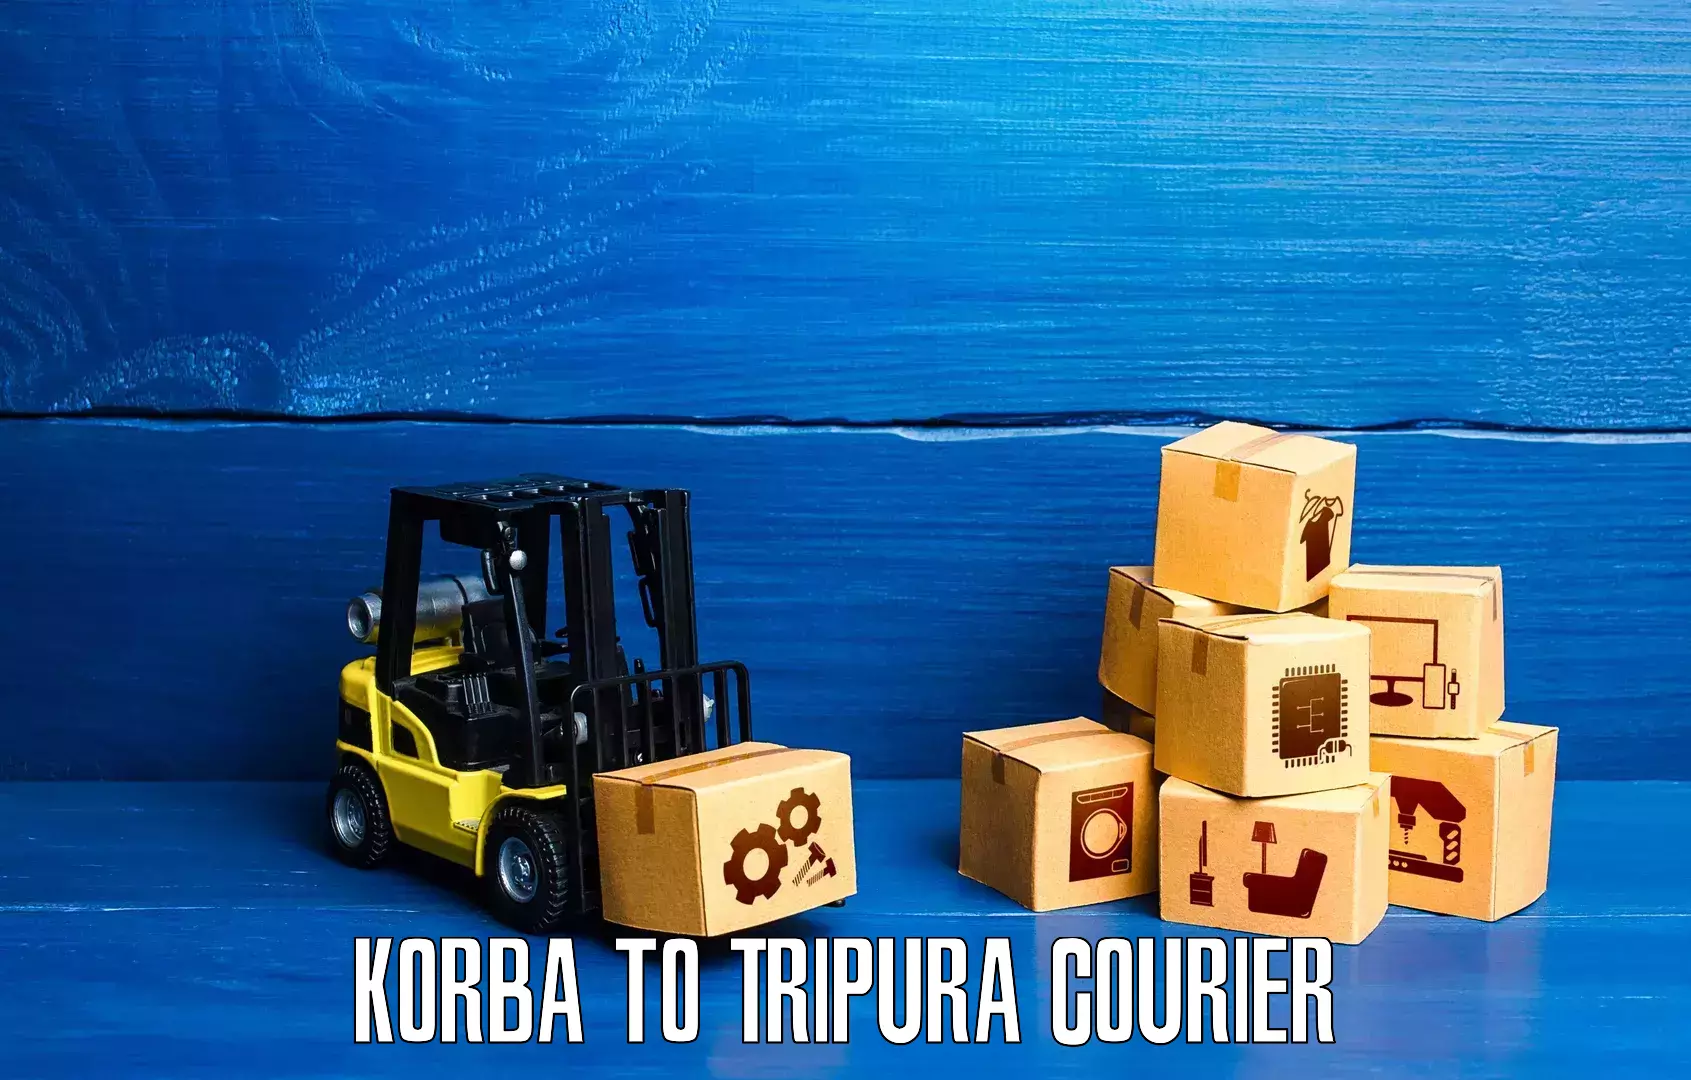 Ground shipping Korba to IIIT Agartala